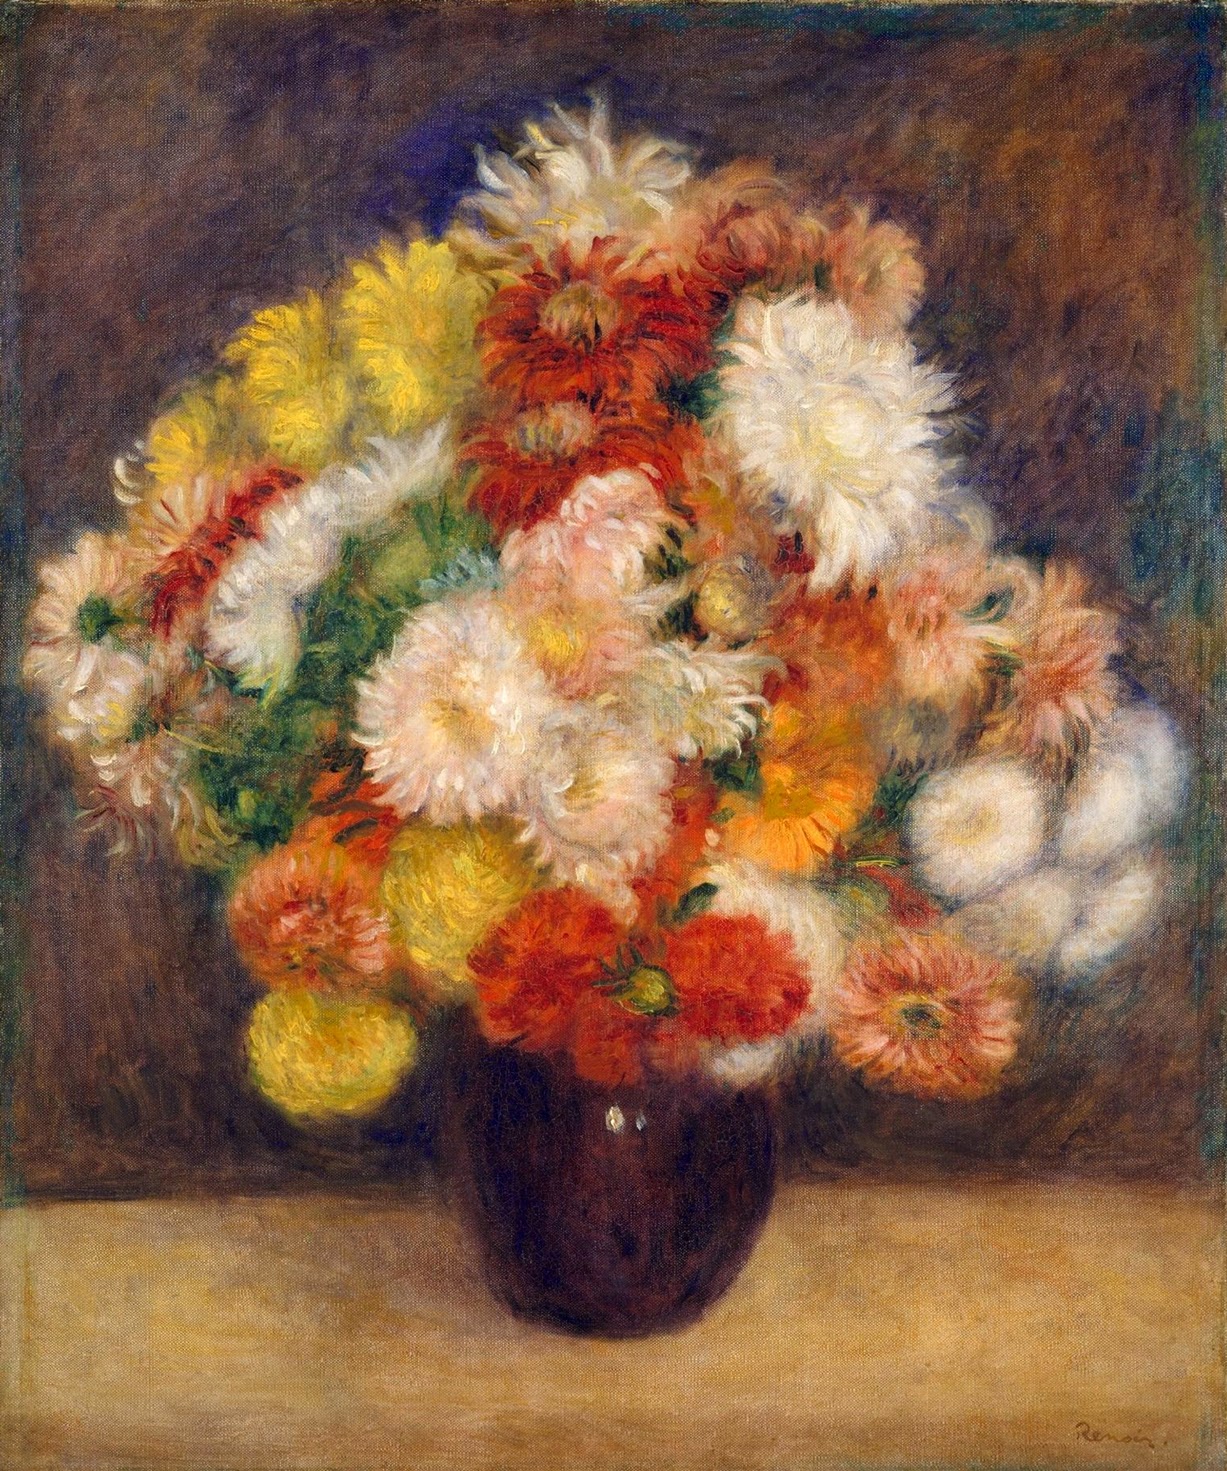 Pierre+Auguste+Renoir+-+Bouquet+of+chrysanthemums,+1881